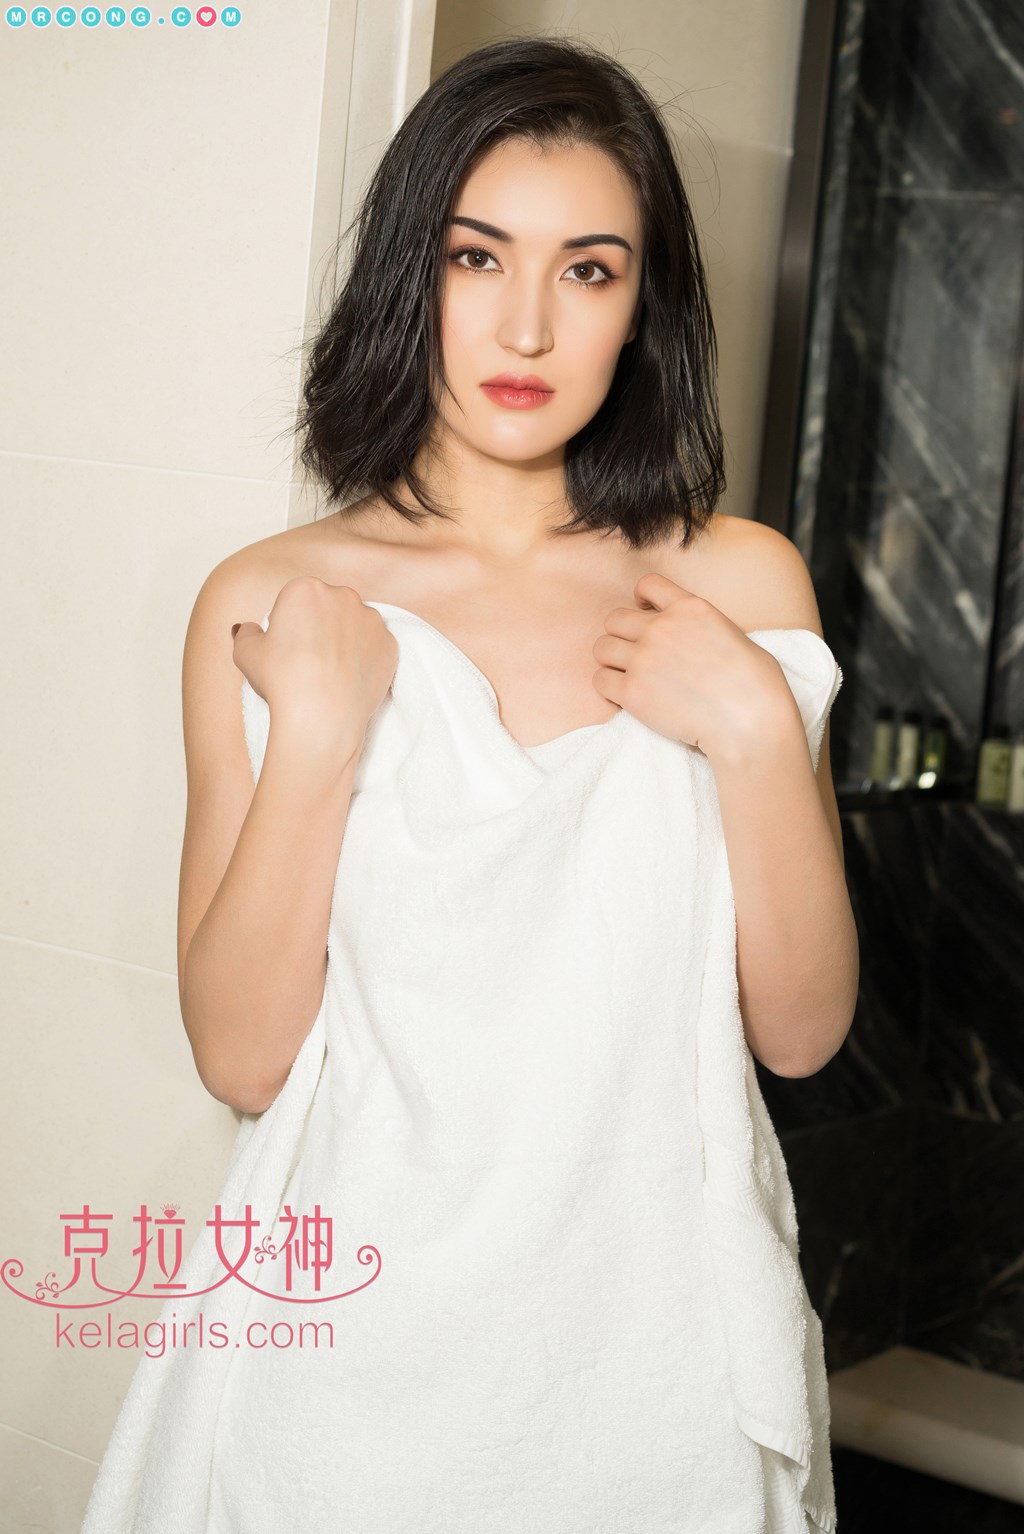 KelaGirls 2018-05-04: Model Rui Sha (瑞莎) (28 photos) photo 2-5